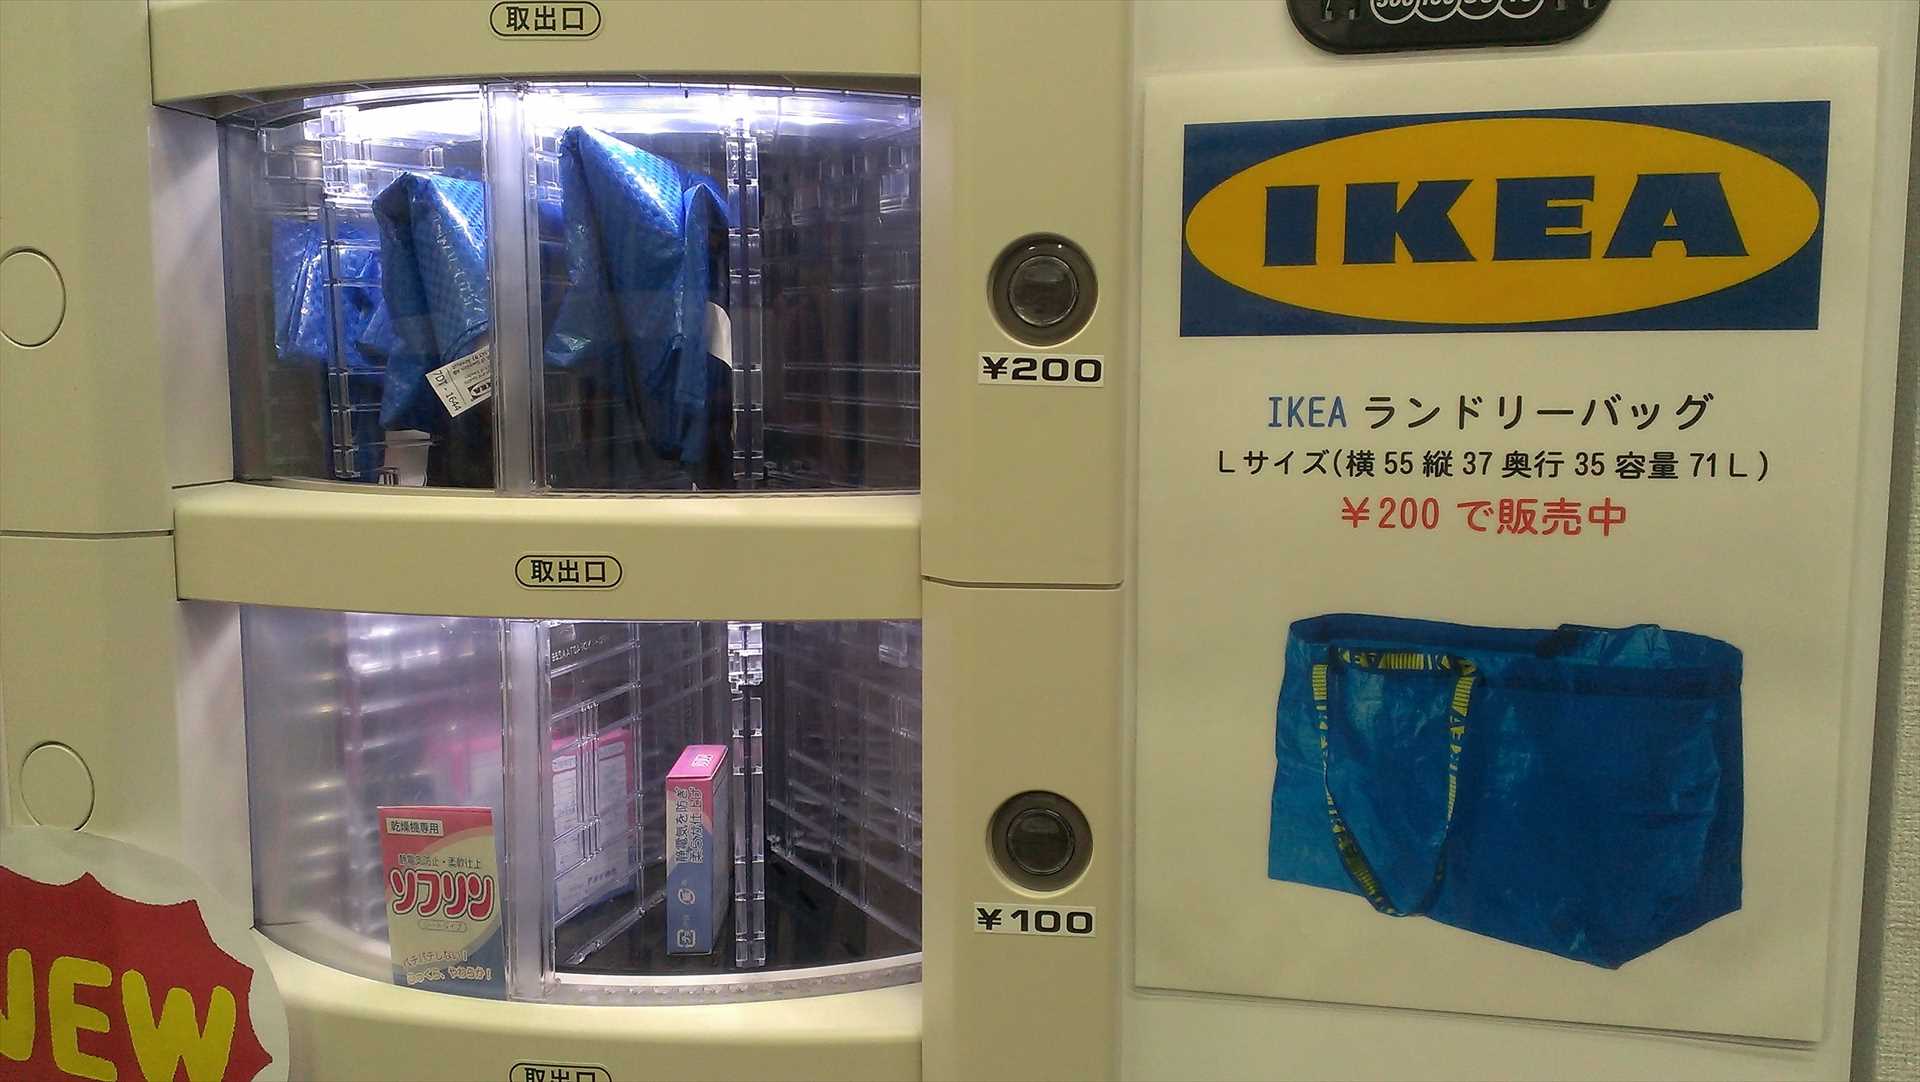 「コインランドリーアクア中延駅前店」の店内にある自動販売機で販売されているIKEAの「FRAKTA キャリーバッグ L, ブルー」